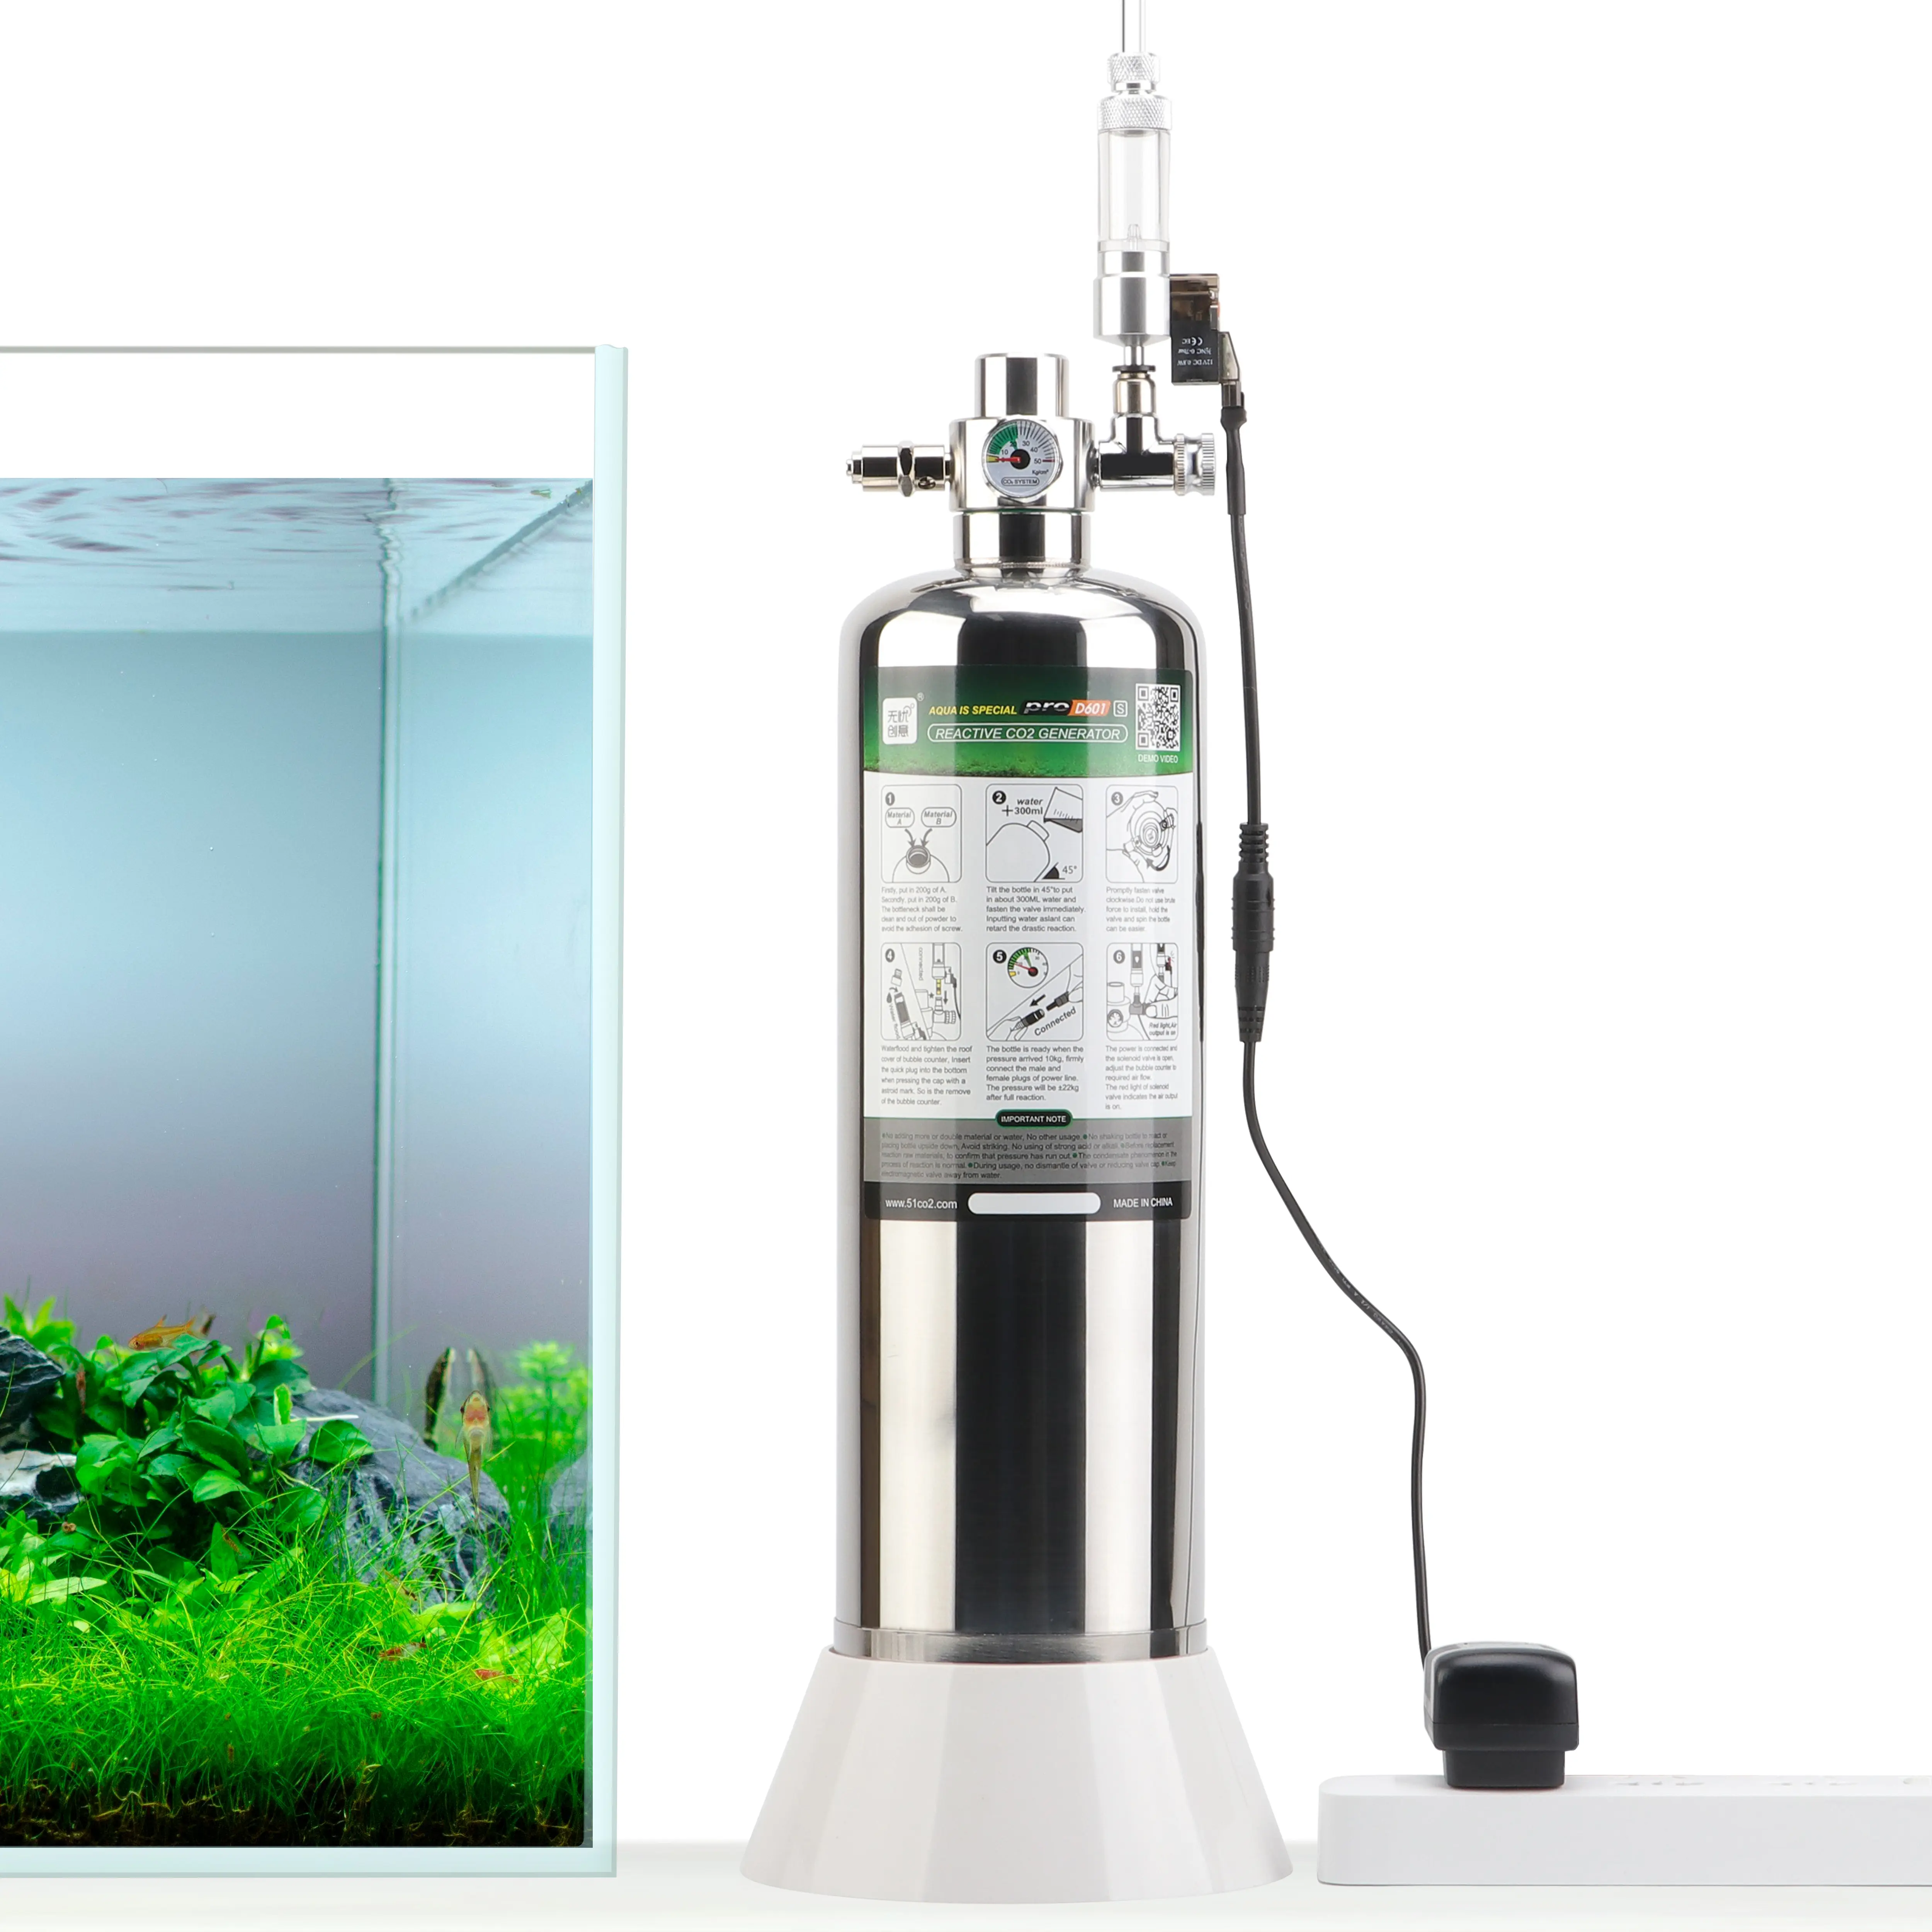 Uuidear Aquarium Diy CO2 Generator Systeem Kit Met Druk Luchtstroom Aanpassing Water Plant Fish Aquarium Co2 Gas Cilinder